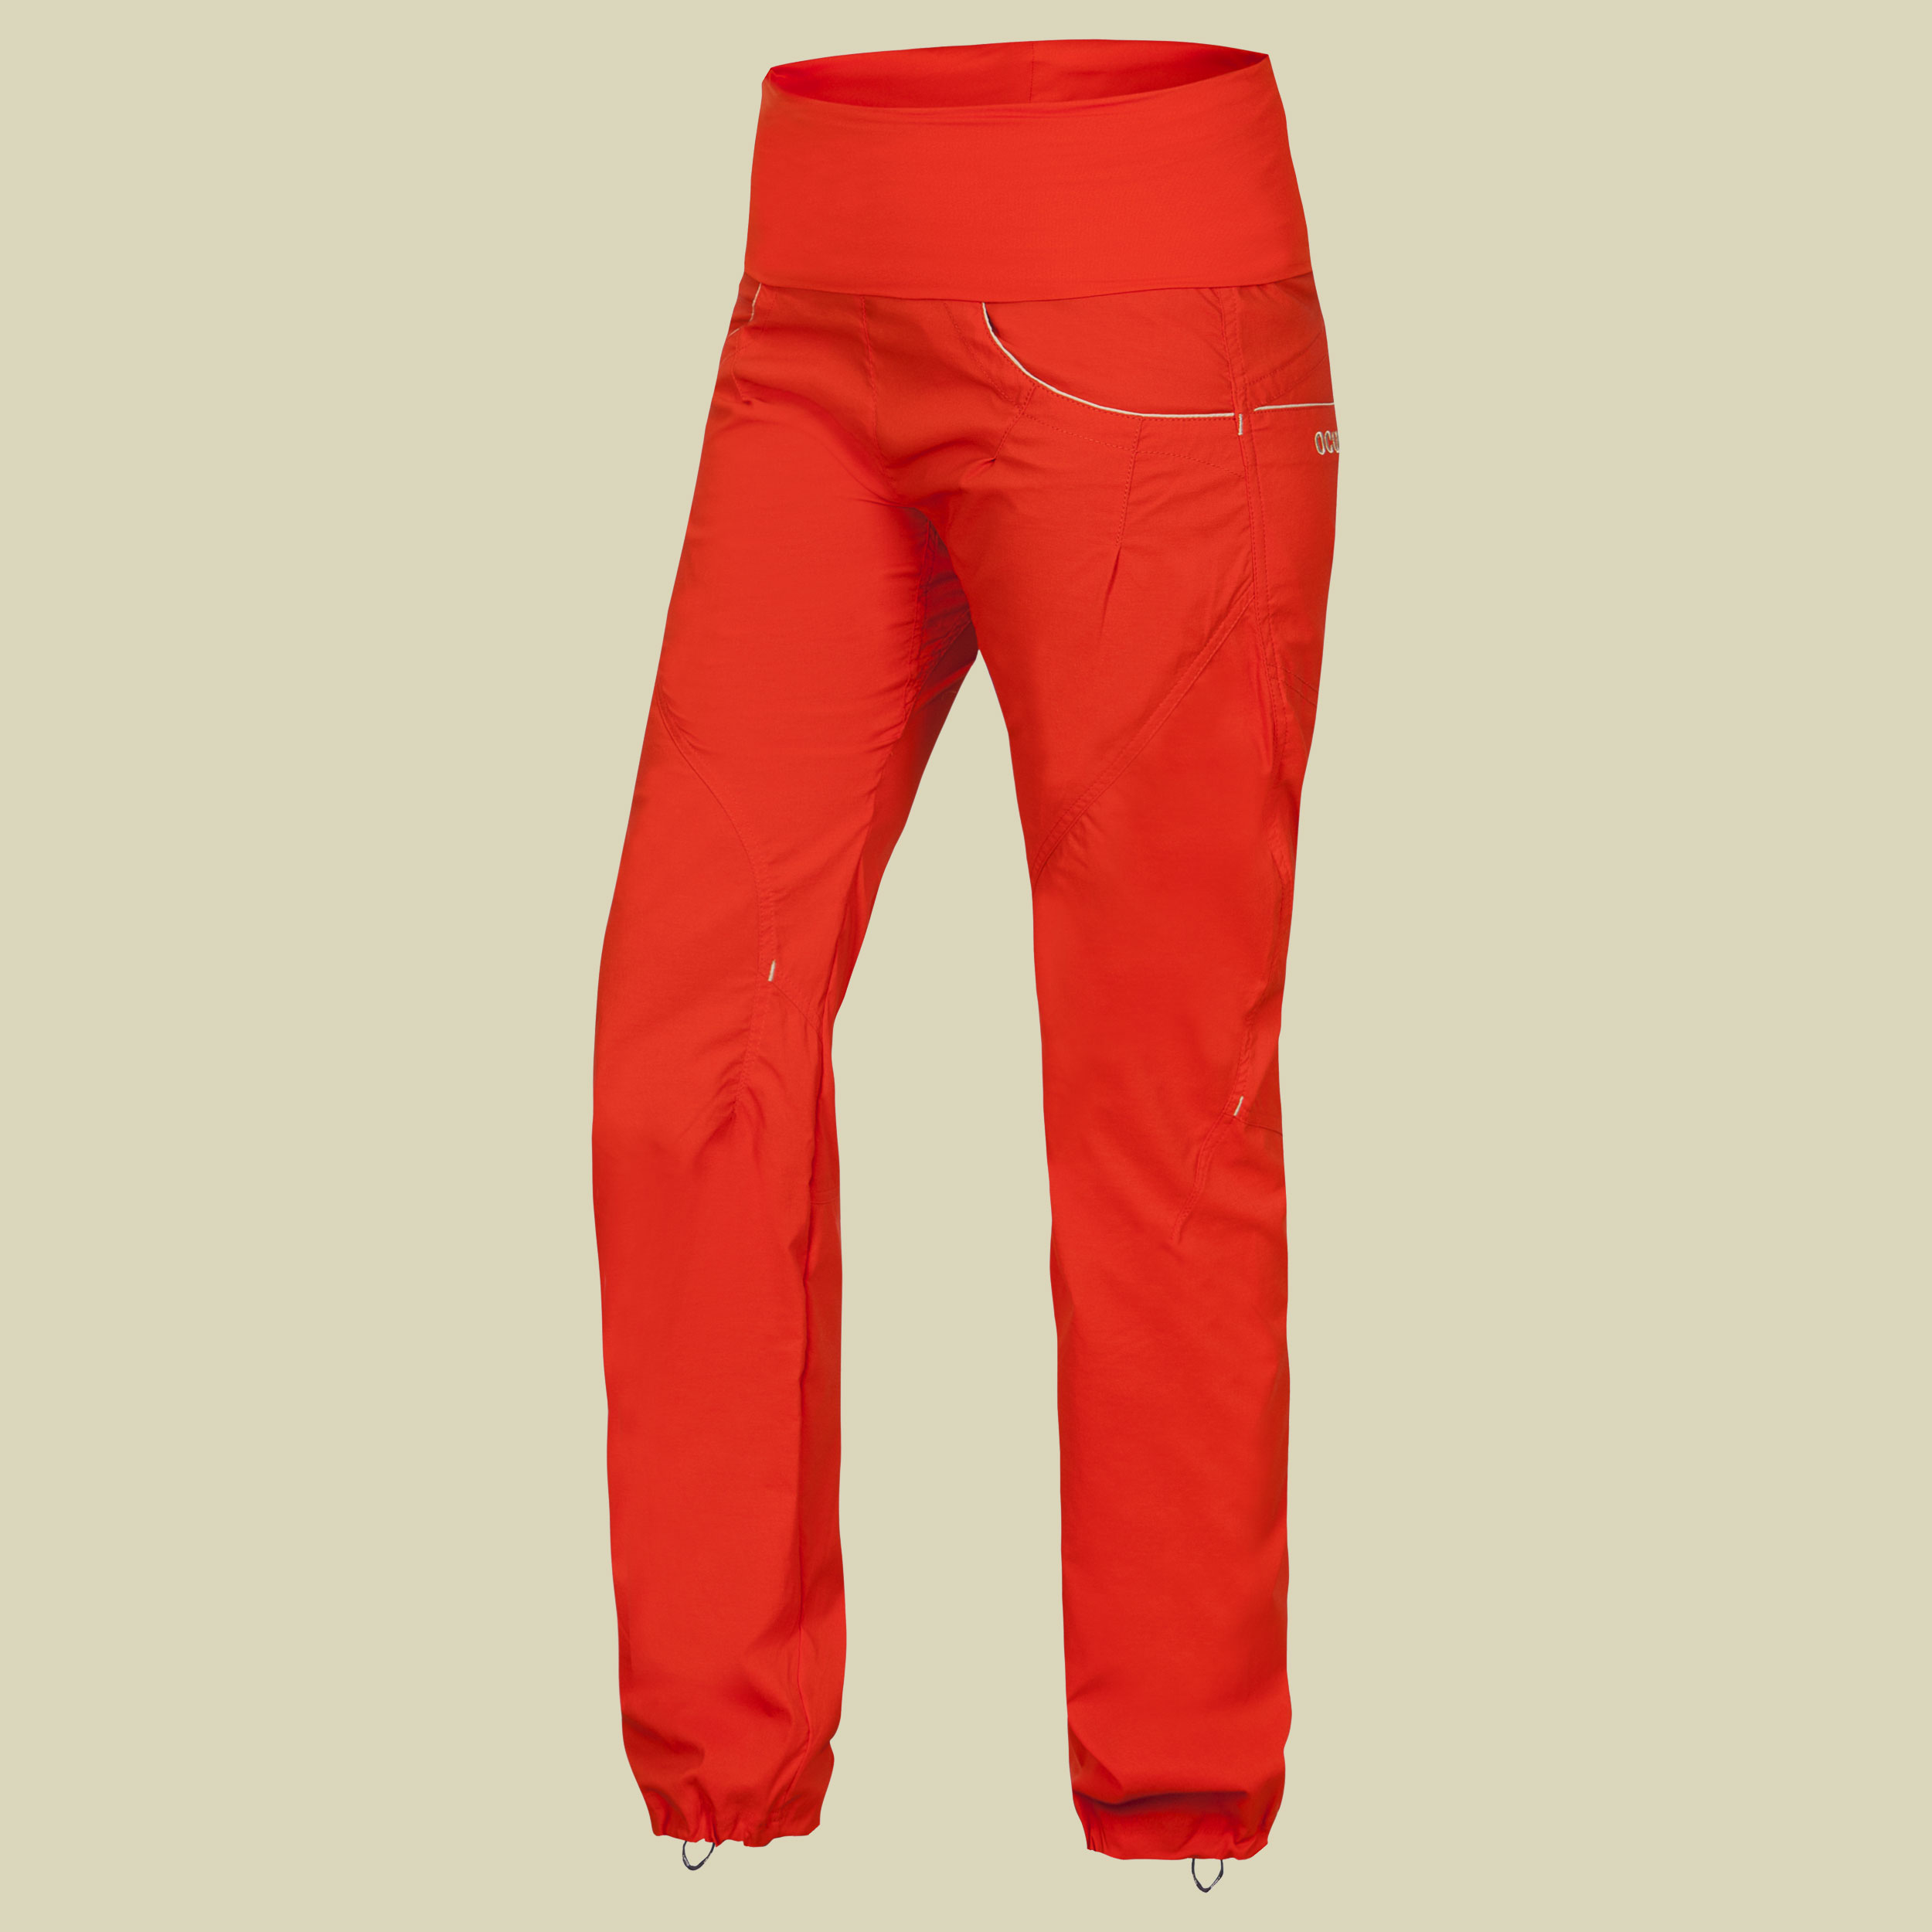 Noya Pants Women Größe L  Farbe orange poinciana